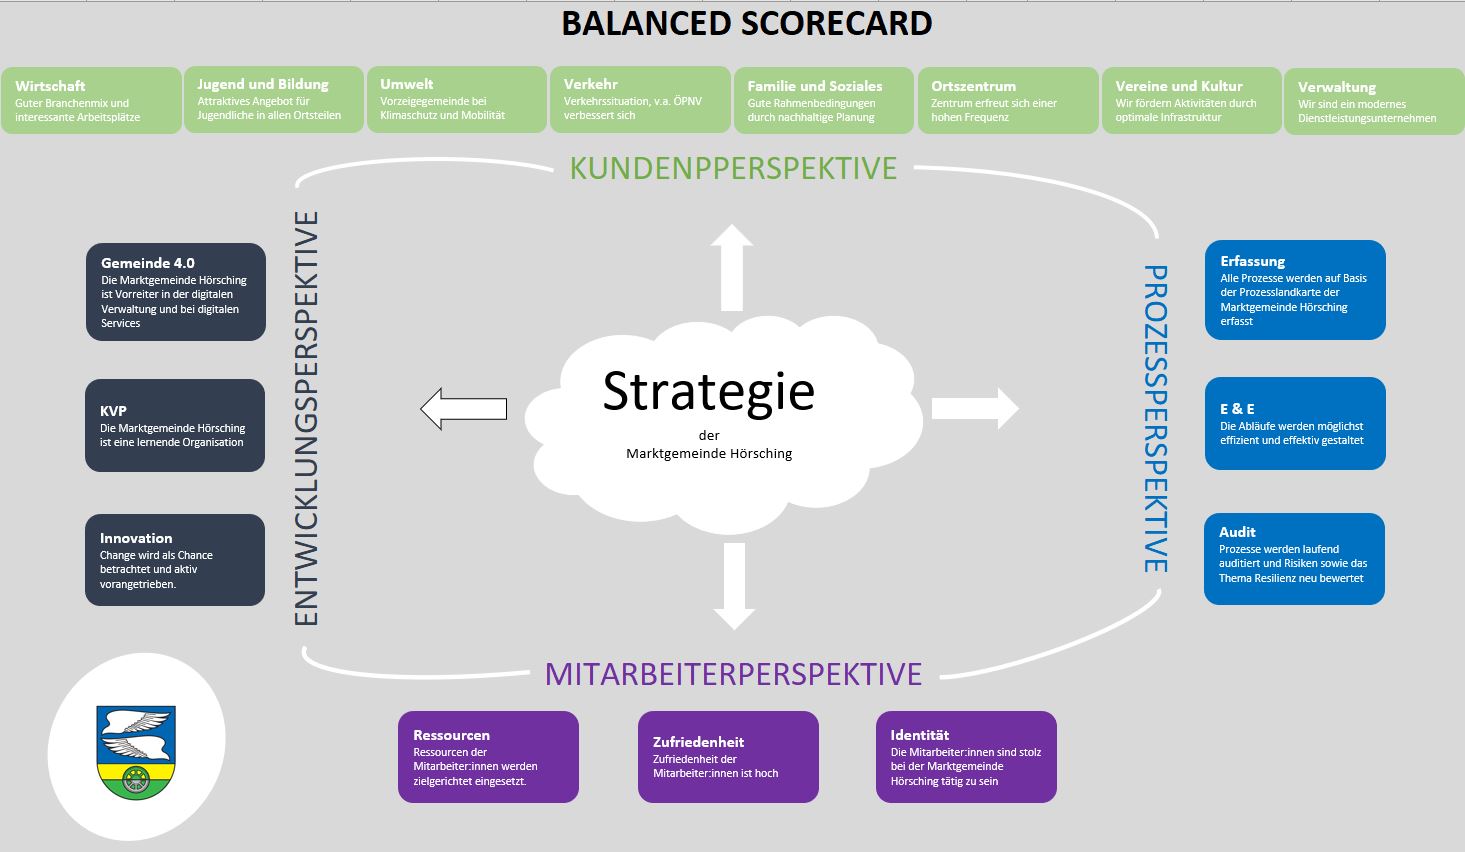 Hörsching on the way to excellence - Balanced Scorecard als integriertes Managementsystem für eine ziel- und wirkungsorientierte strategische Steuerung der Marktgemeinde Hörsching.jpg